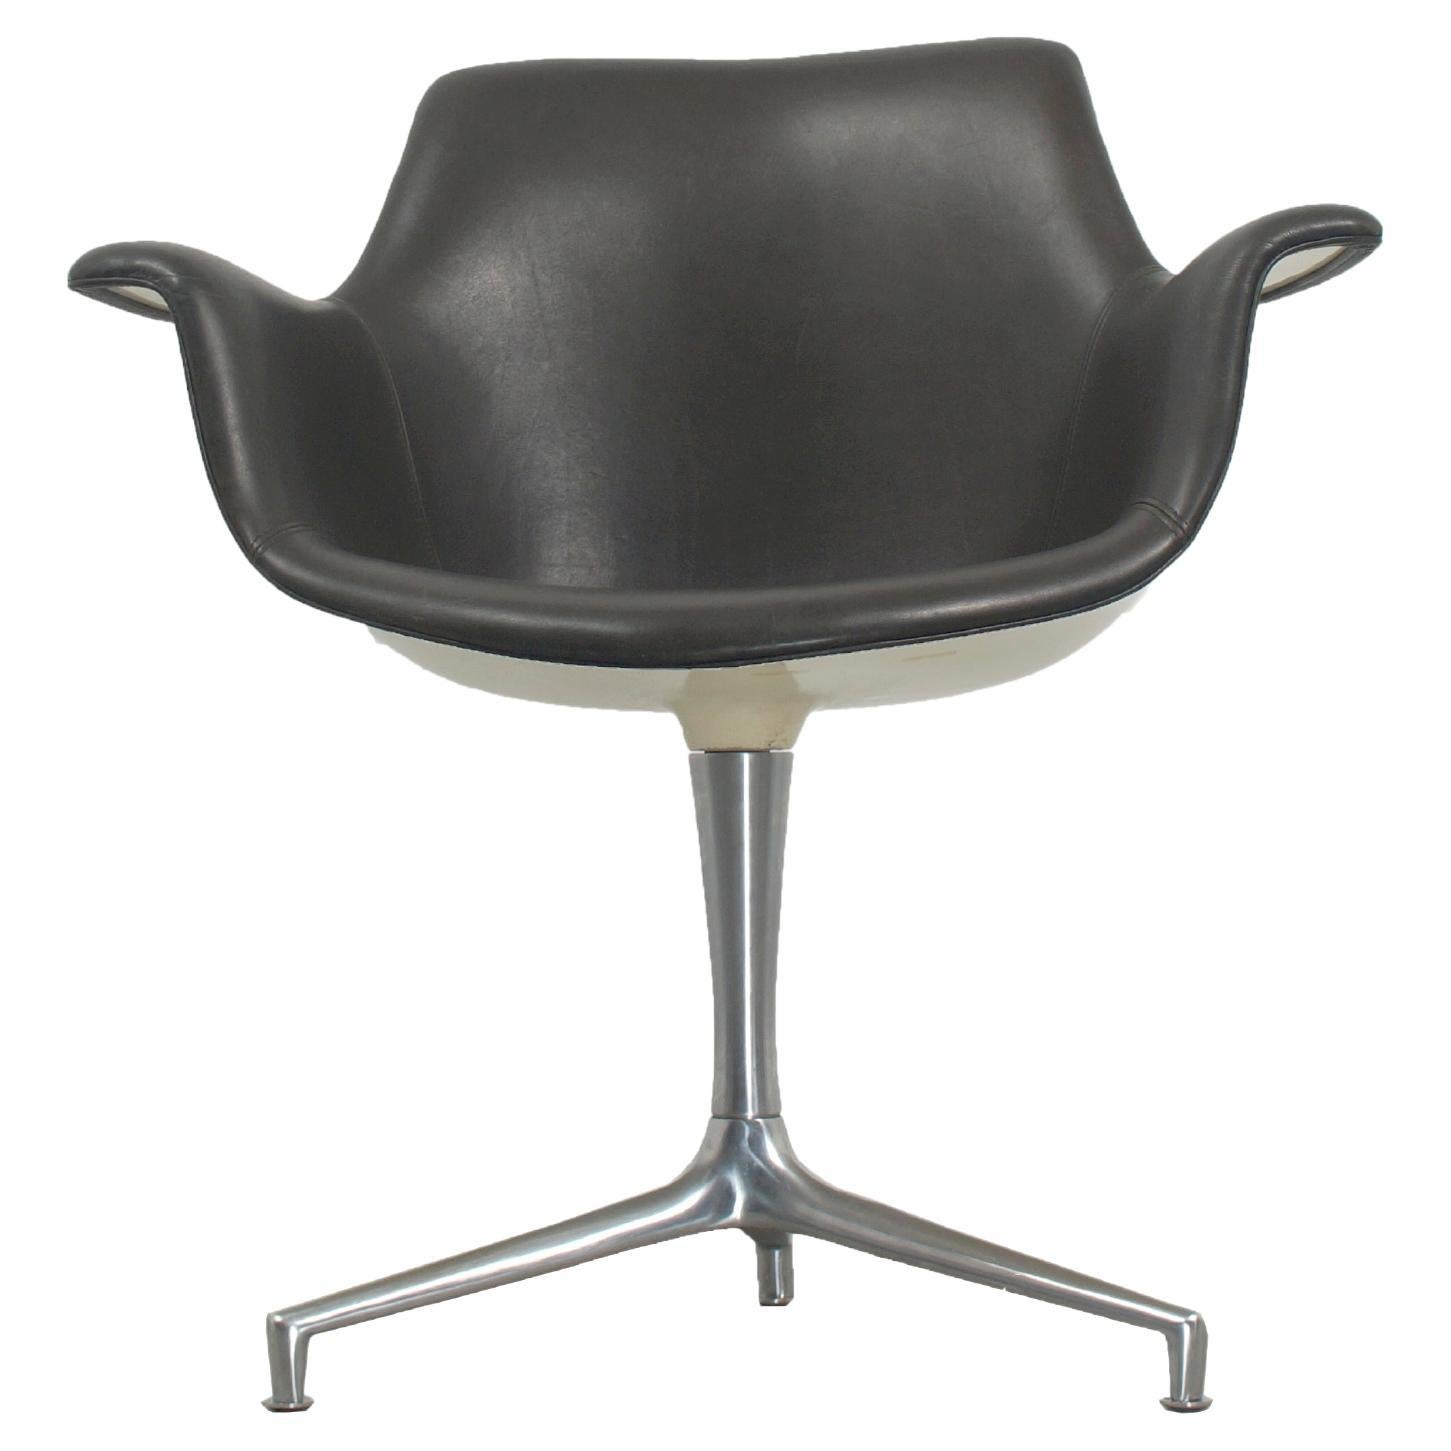 JK810 Kill International desk chair Designed by Jorgen Kastholm